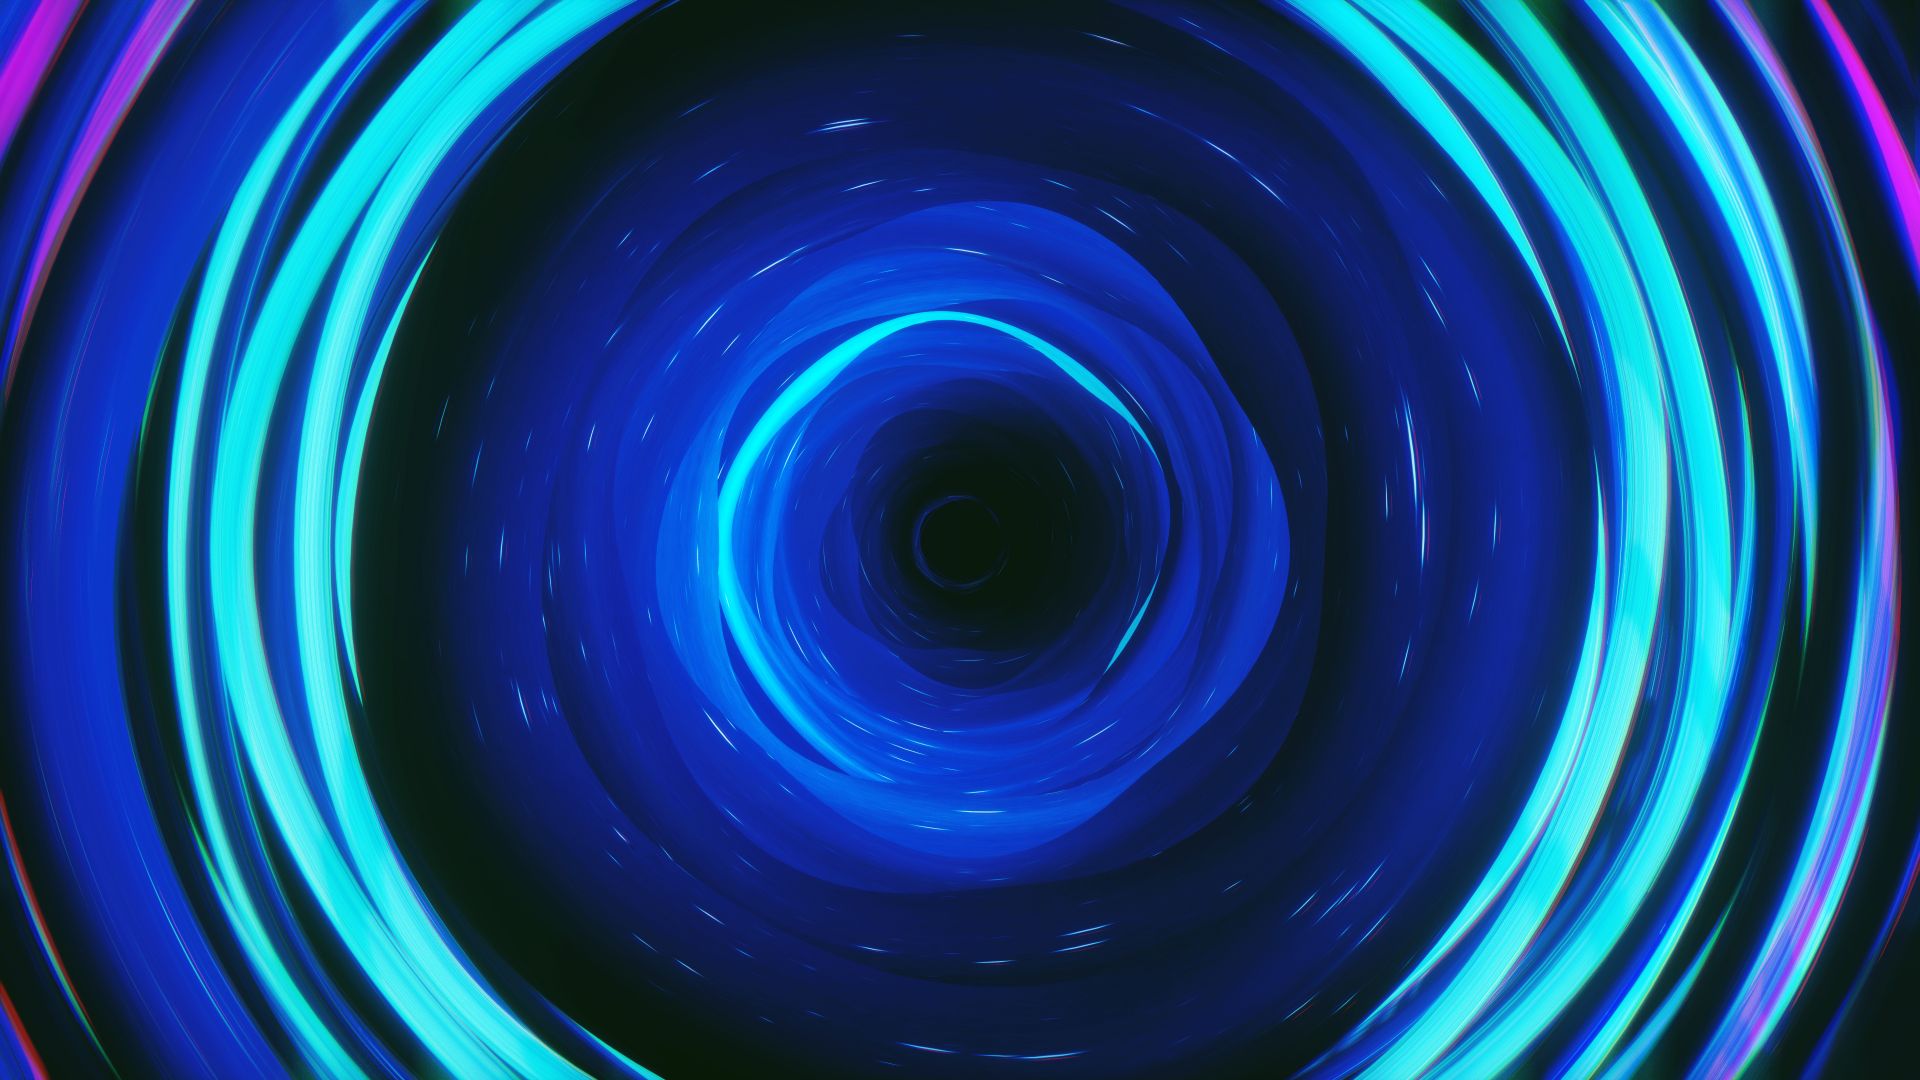 sfondo del cerchio,blu,blu cobalto,blu elettrico,leggero,cerchio